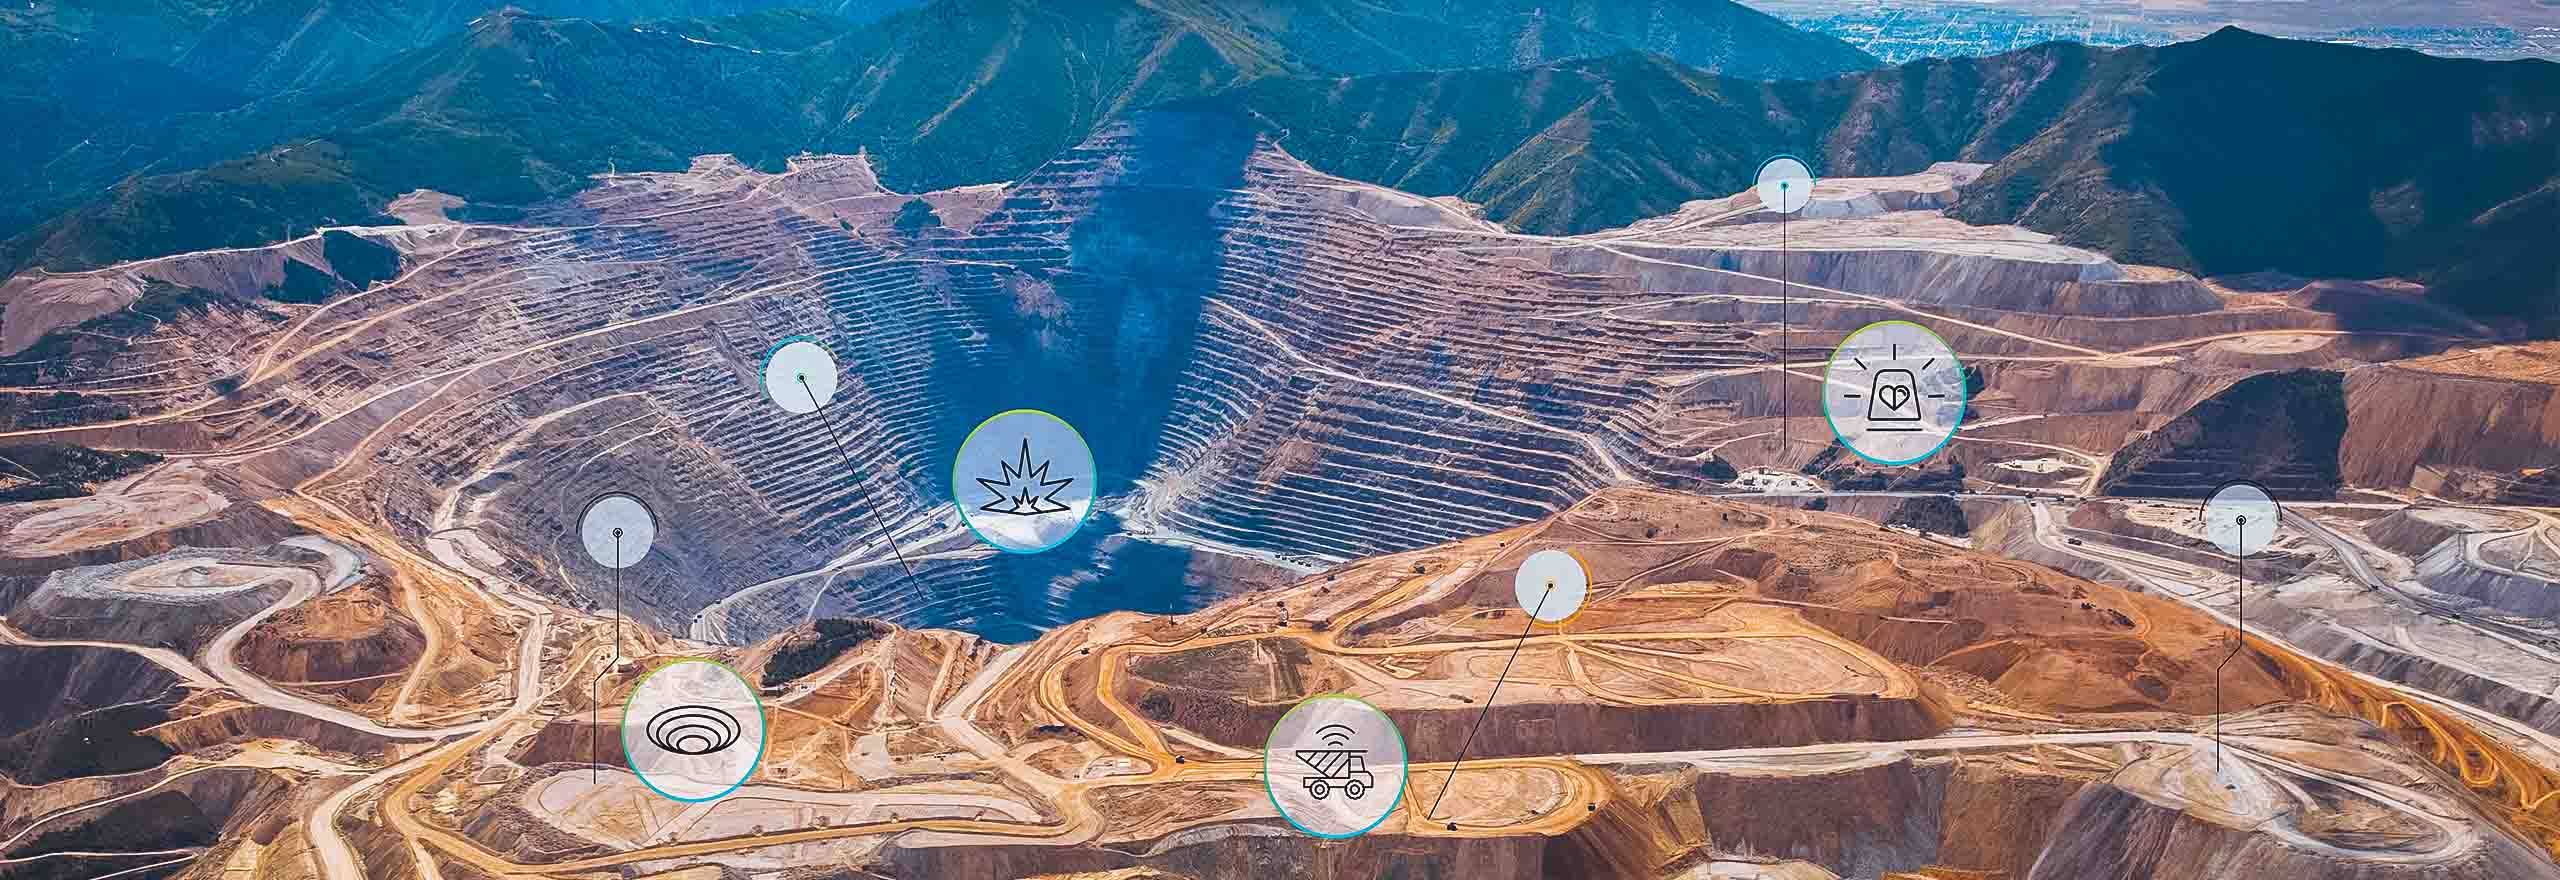 技術オーバーレイを採用した露天掘り鉱山の空撮写真 